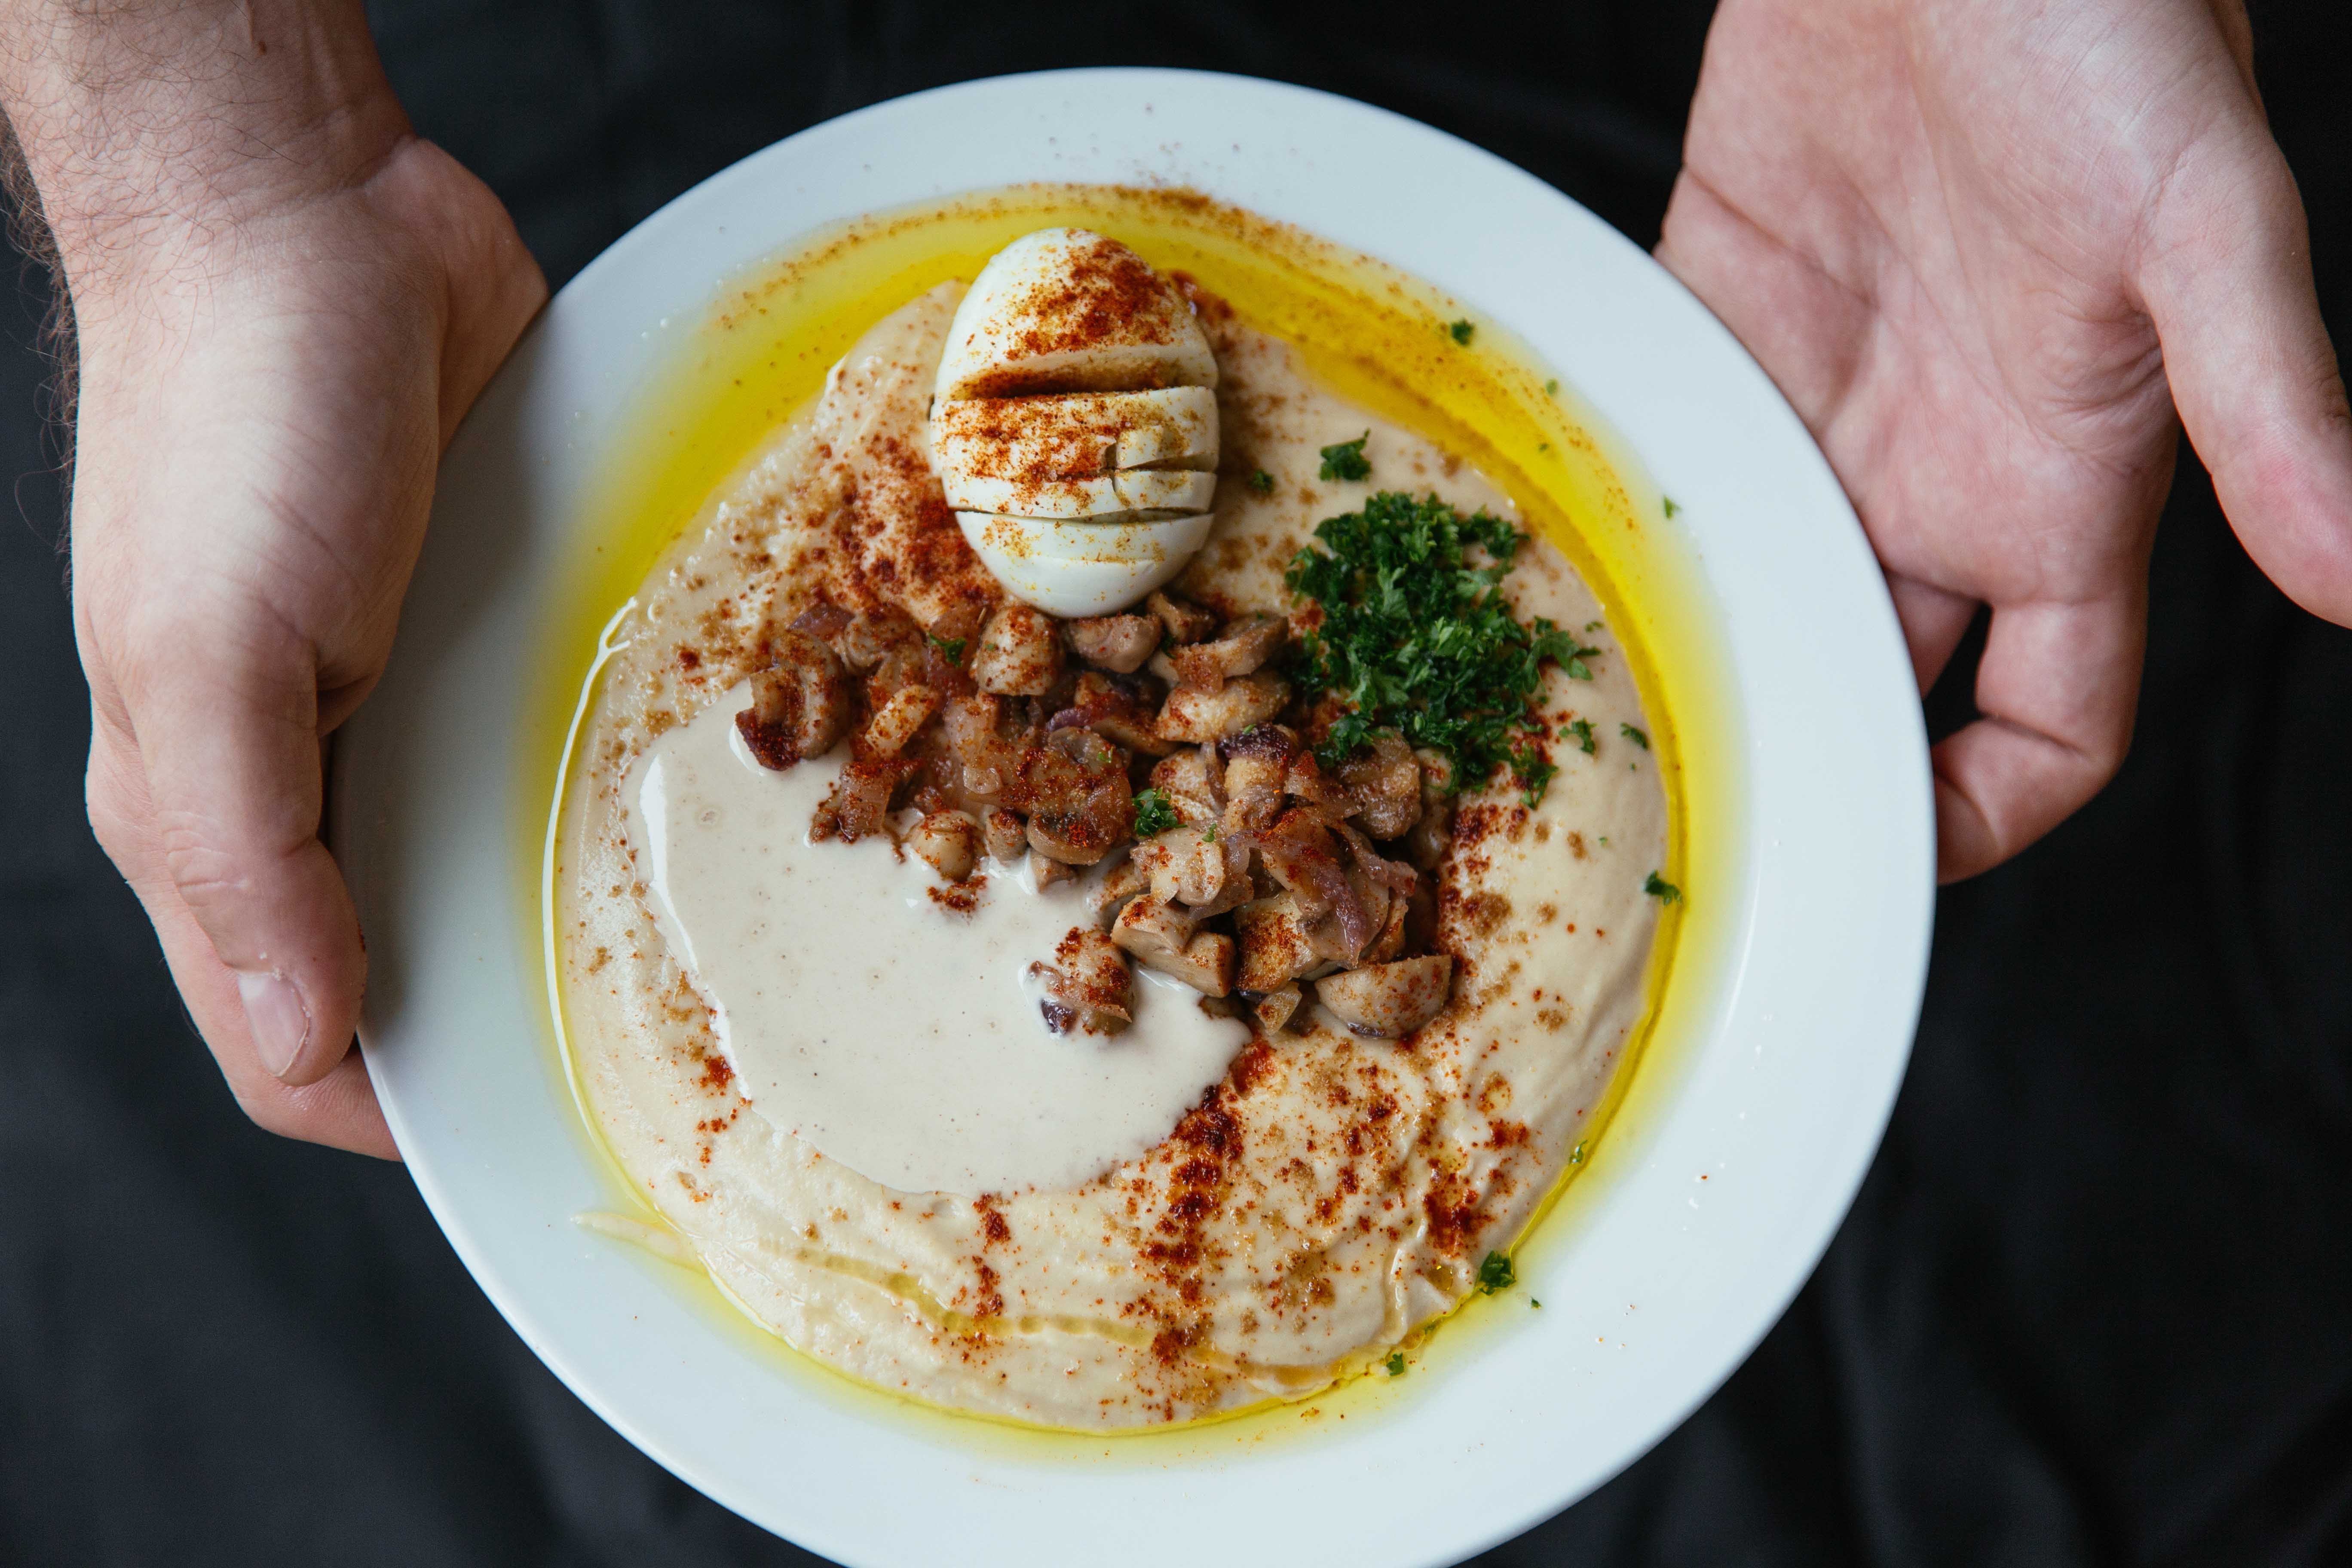 nolisoli eats israeli cuisine hummus elijah